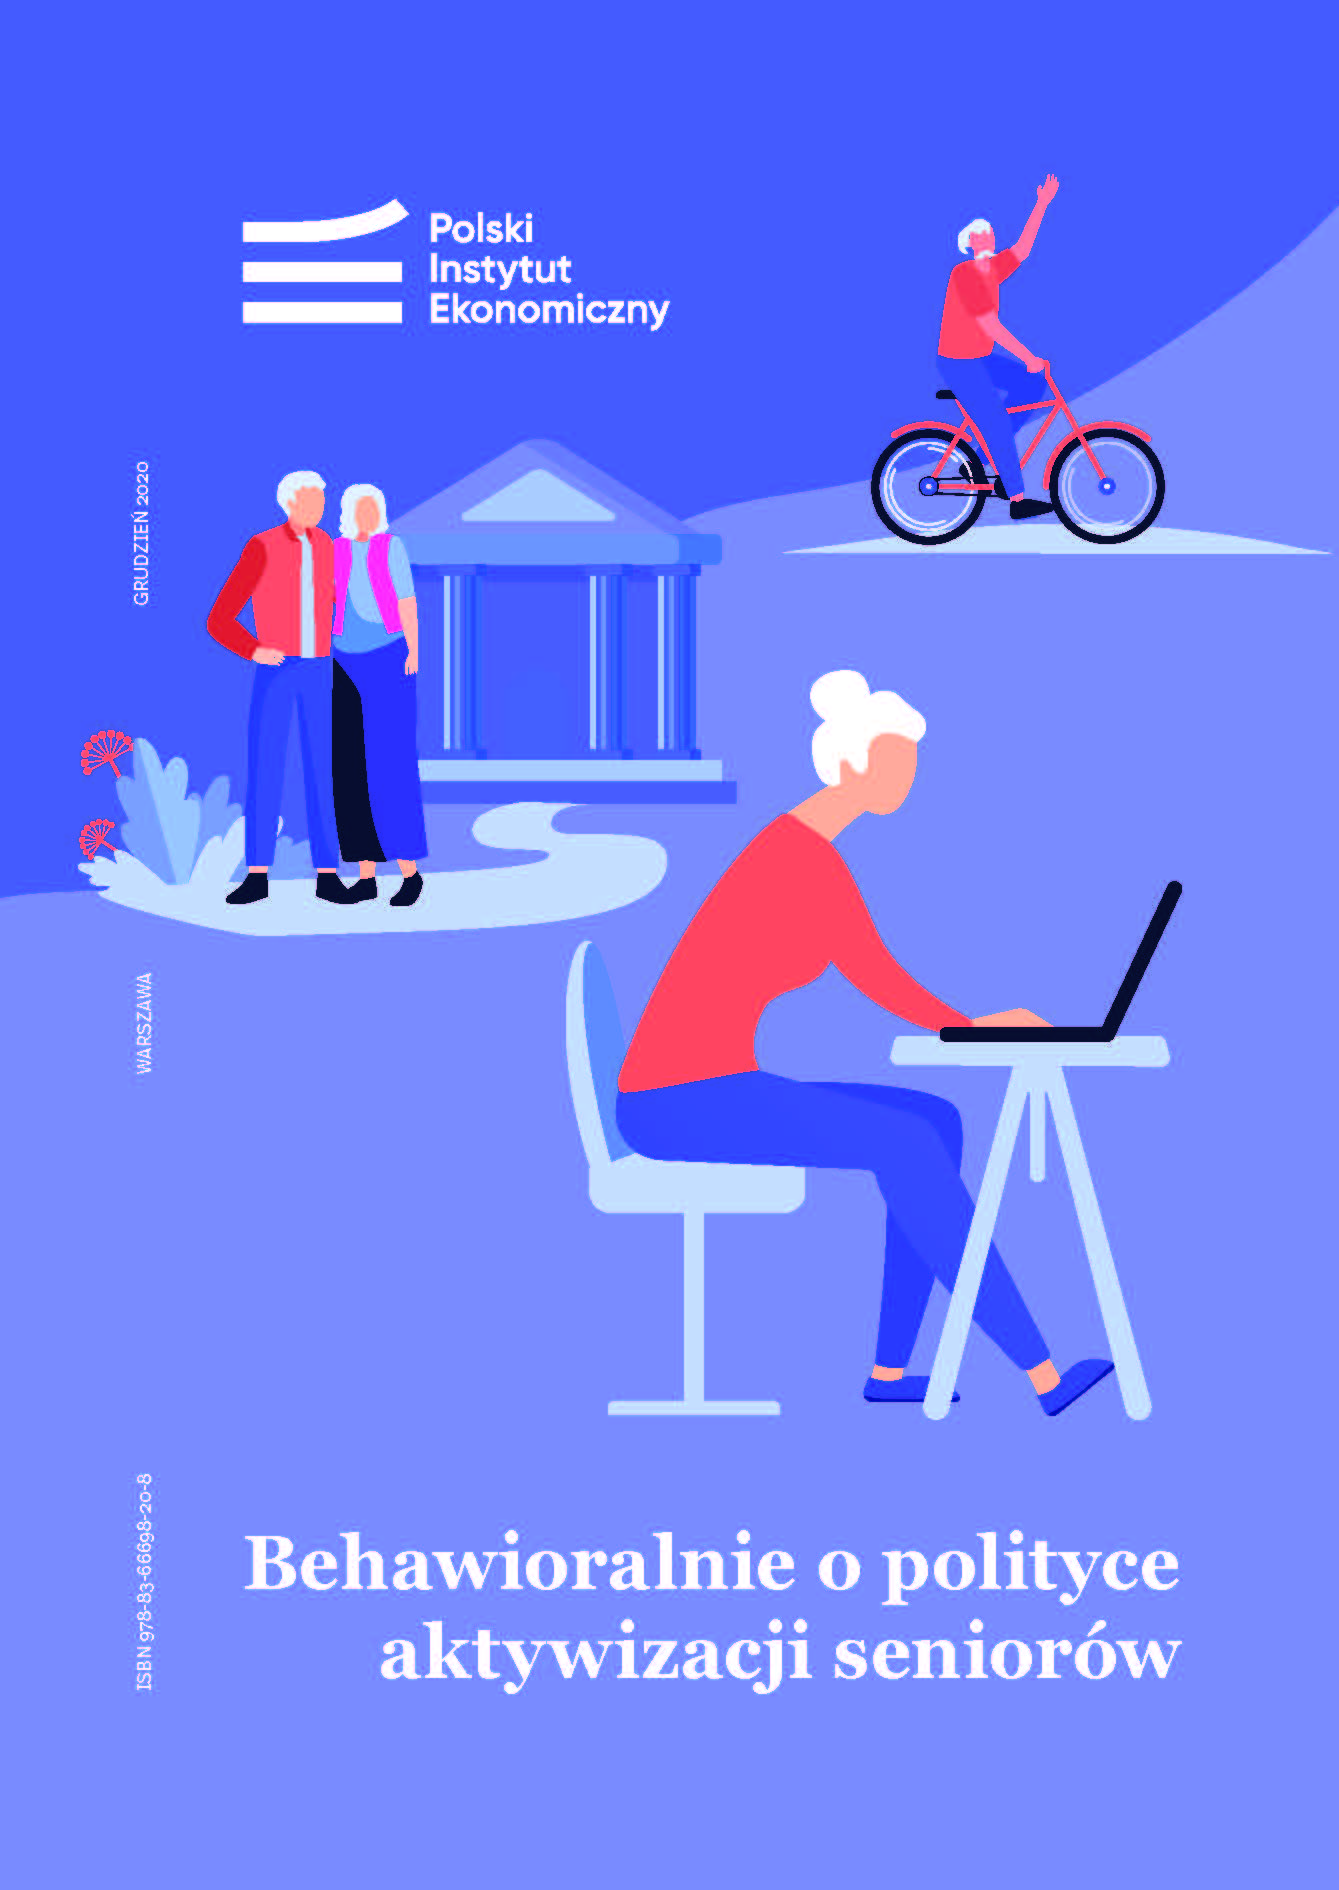 Polska gospodarka potrzebuje potencjału seniorów, a tylko co szósty Polak w wieku 60+ pracuje